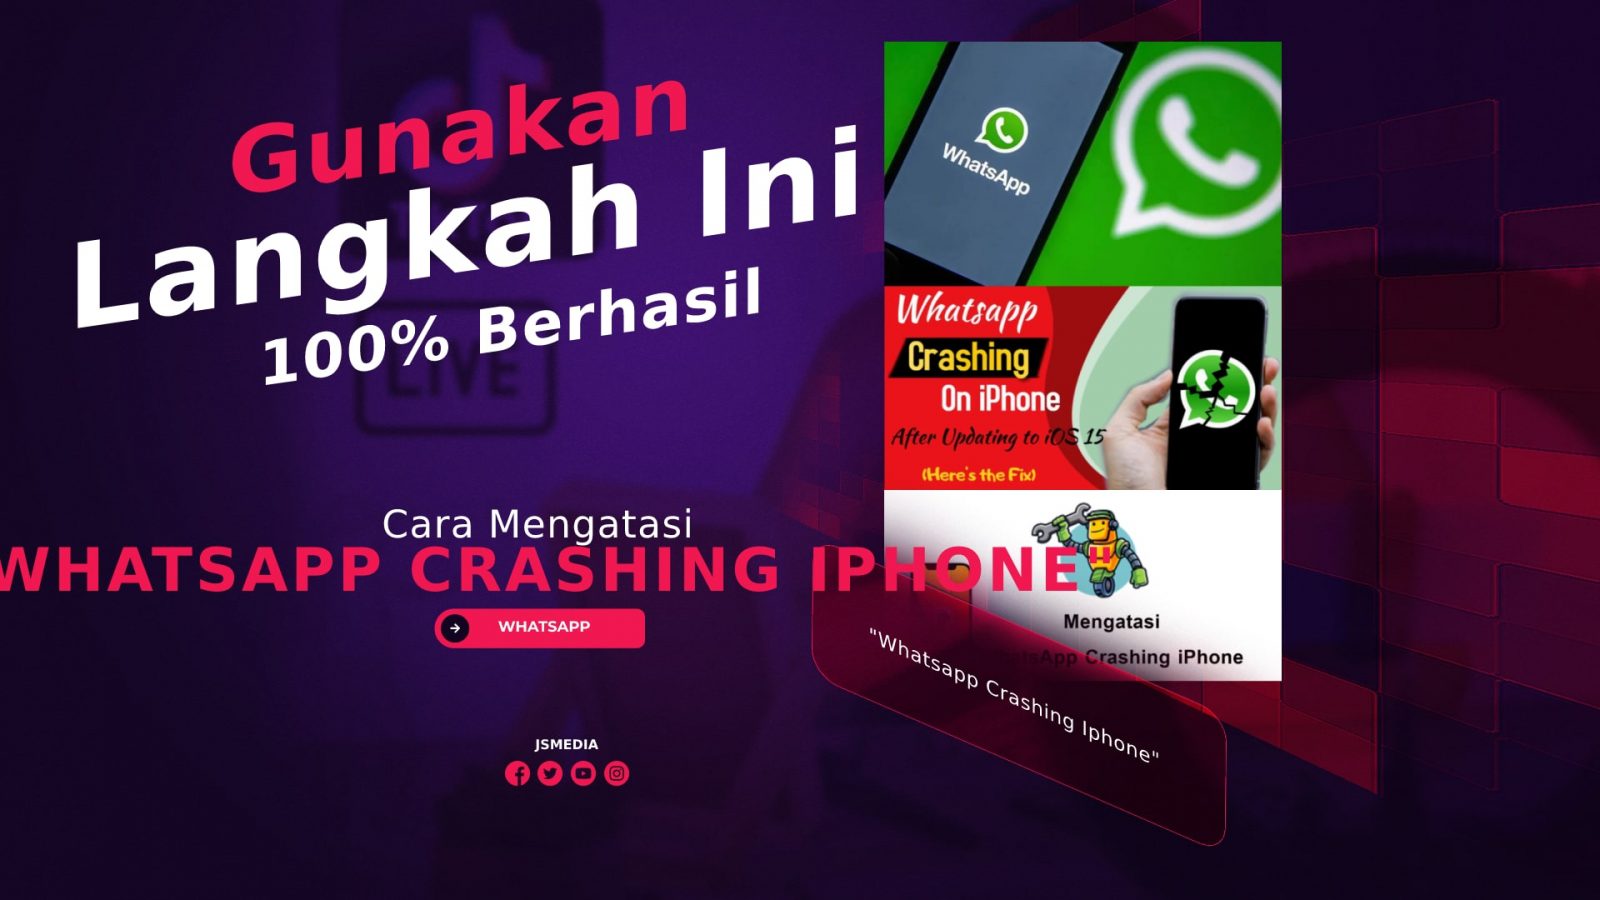 Cara Mengatasi "Whatsapp Crashing Iphone", 100% Berhasil